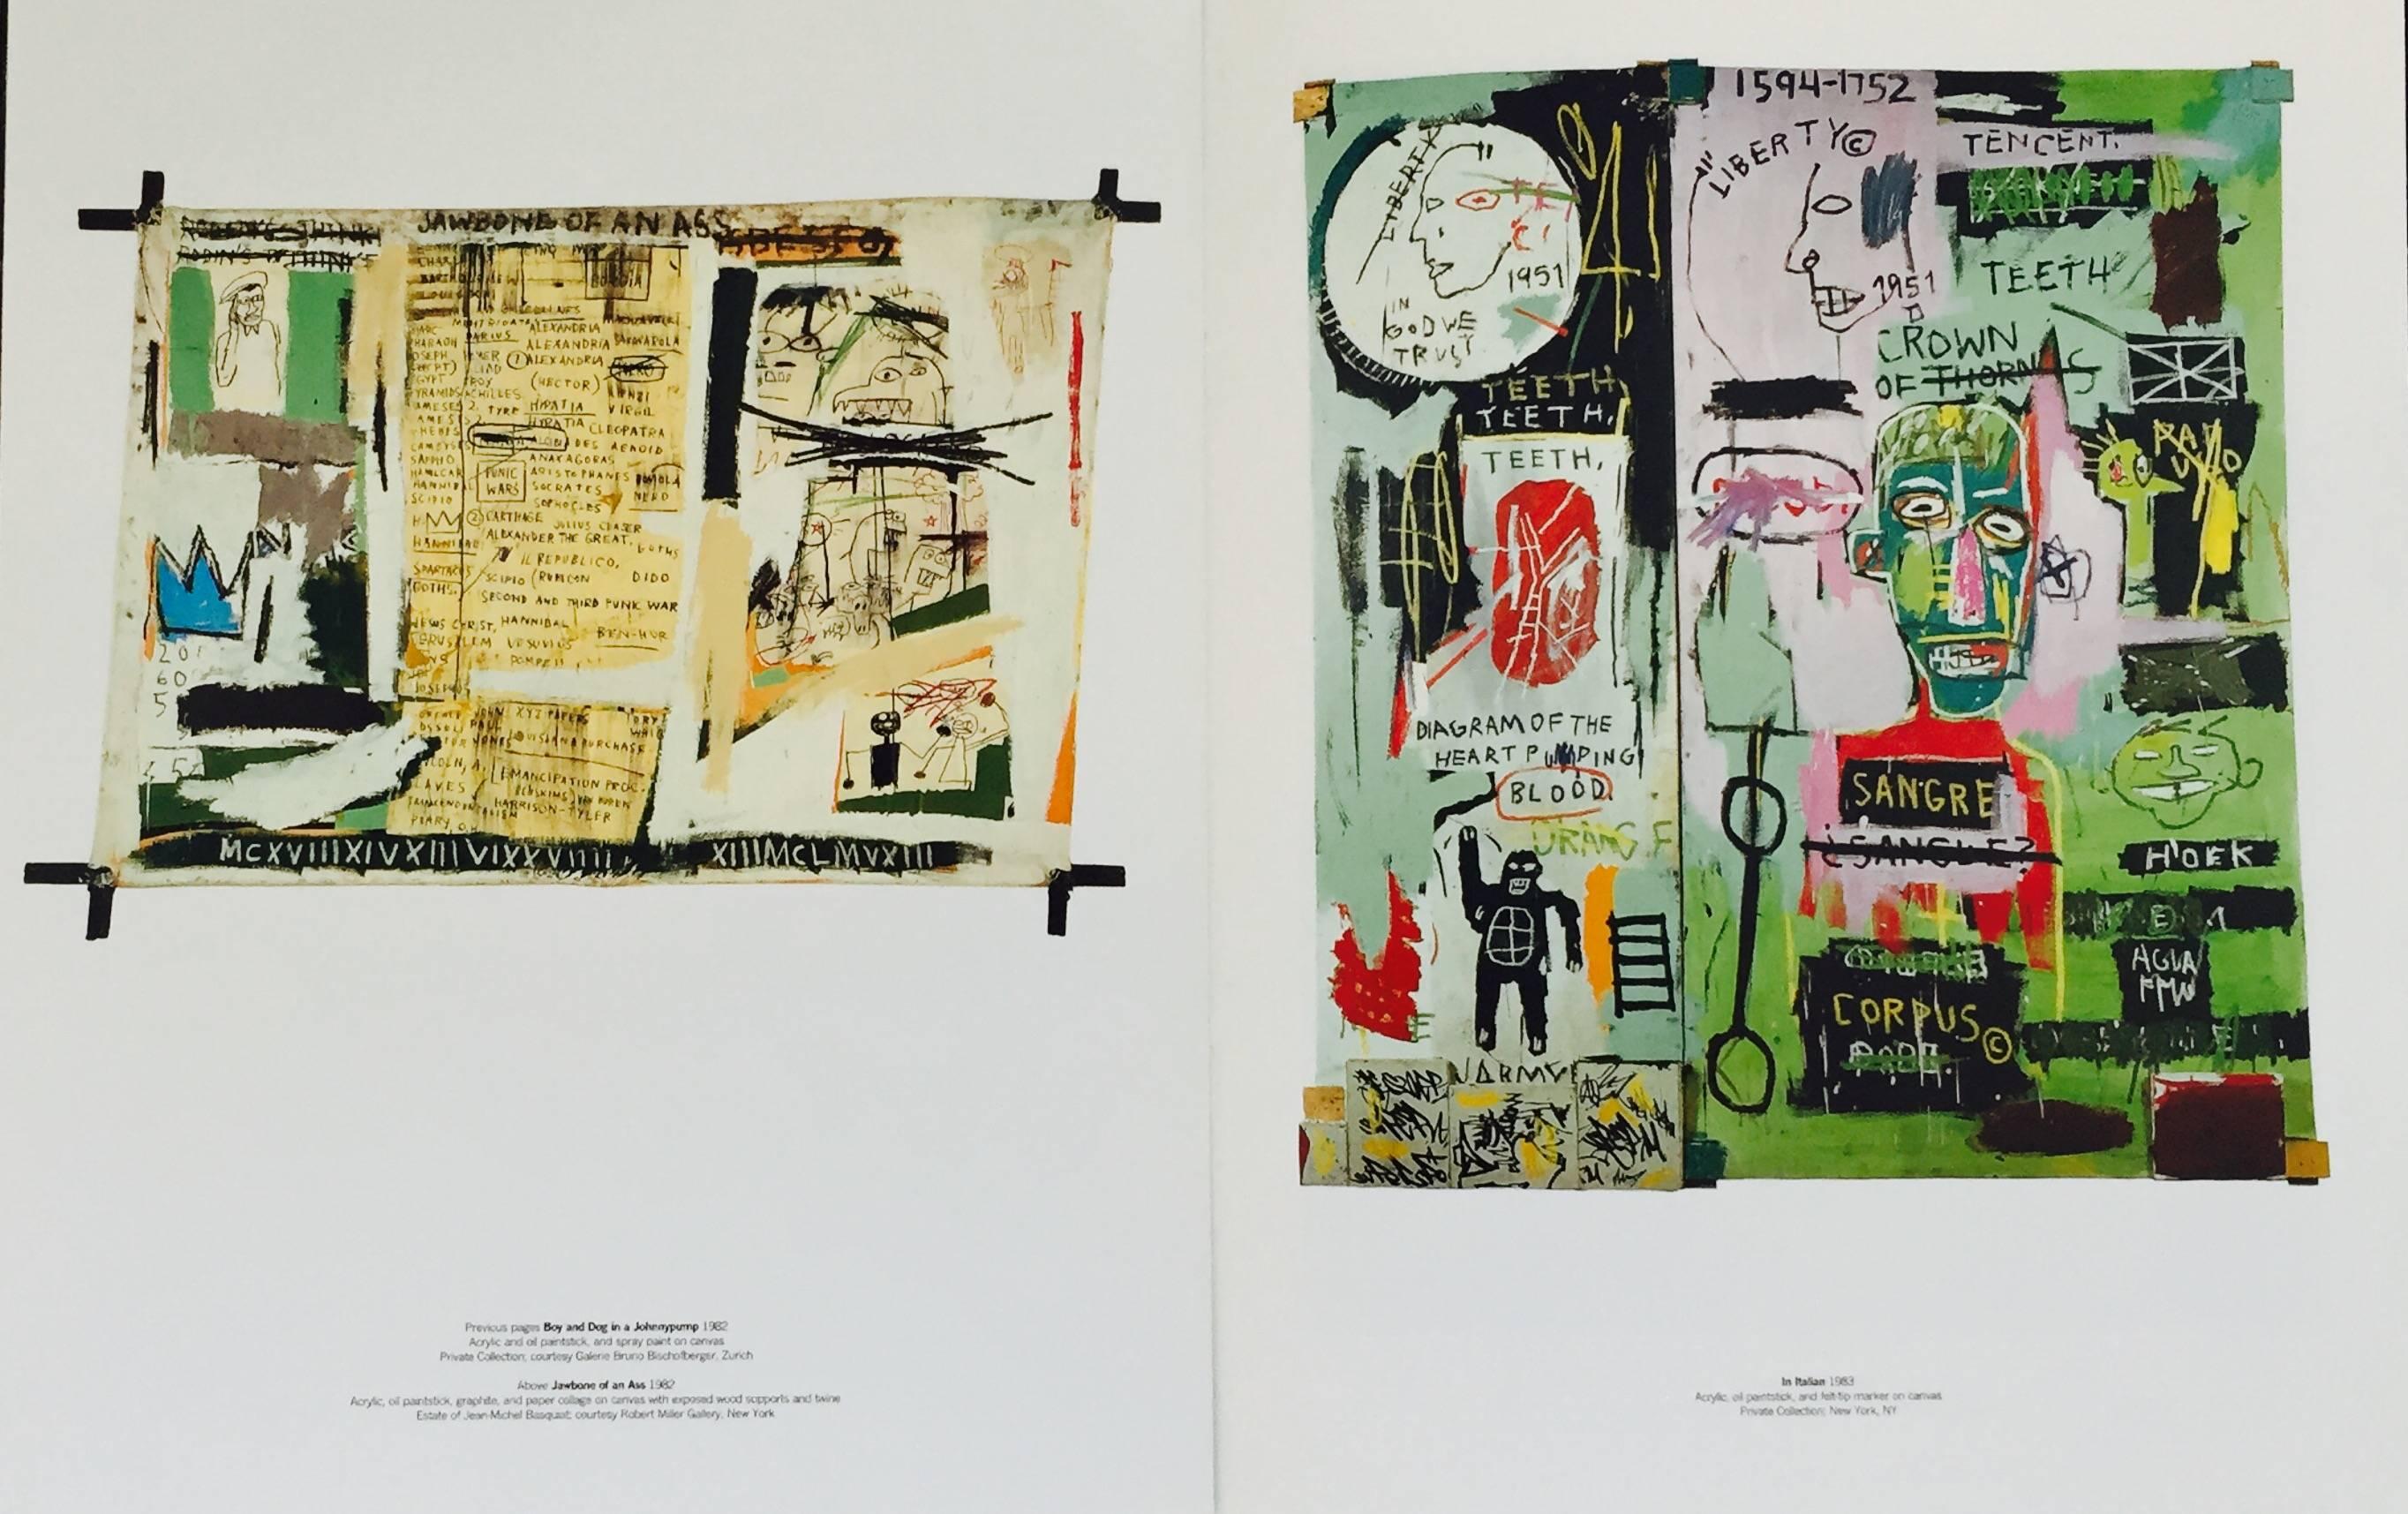 Basquiat Serpentine Gallery Londres 1996 :
Rare catalogue d'exposition de Basquiat des années 1990, hautement collectionnable, publié à l'occasion de la première grande exposition londonienne de Basquiat : Jean-Michel Basquiat, Serpentine Gallery,